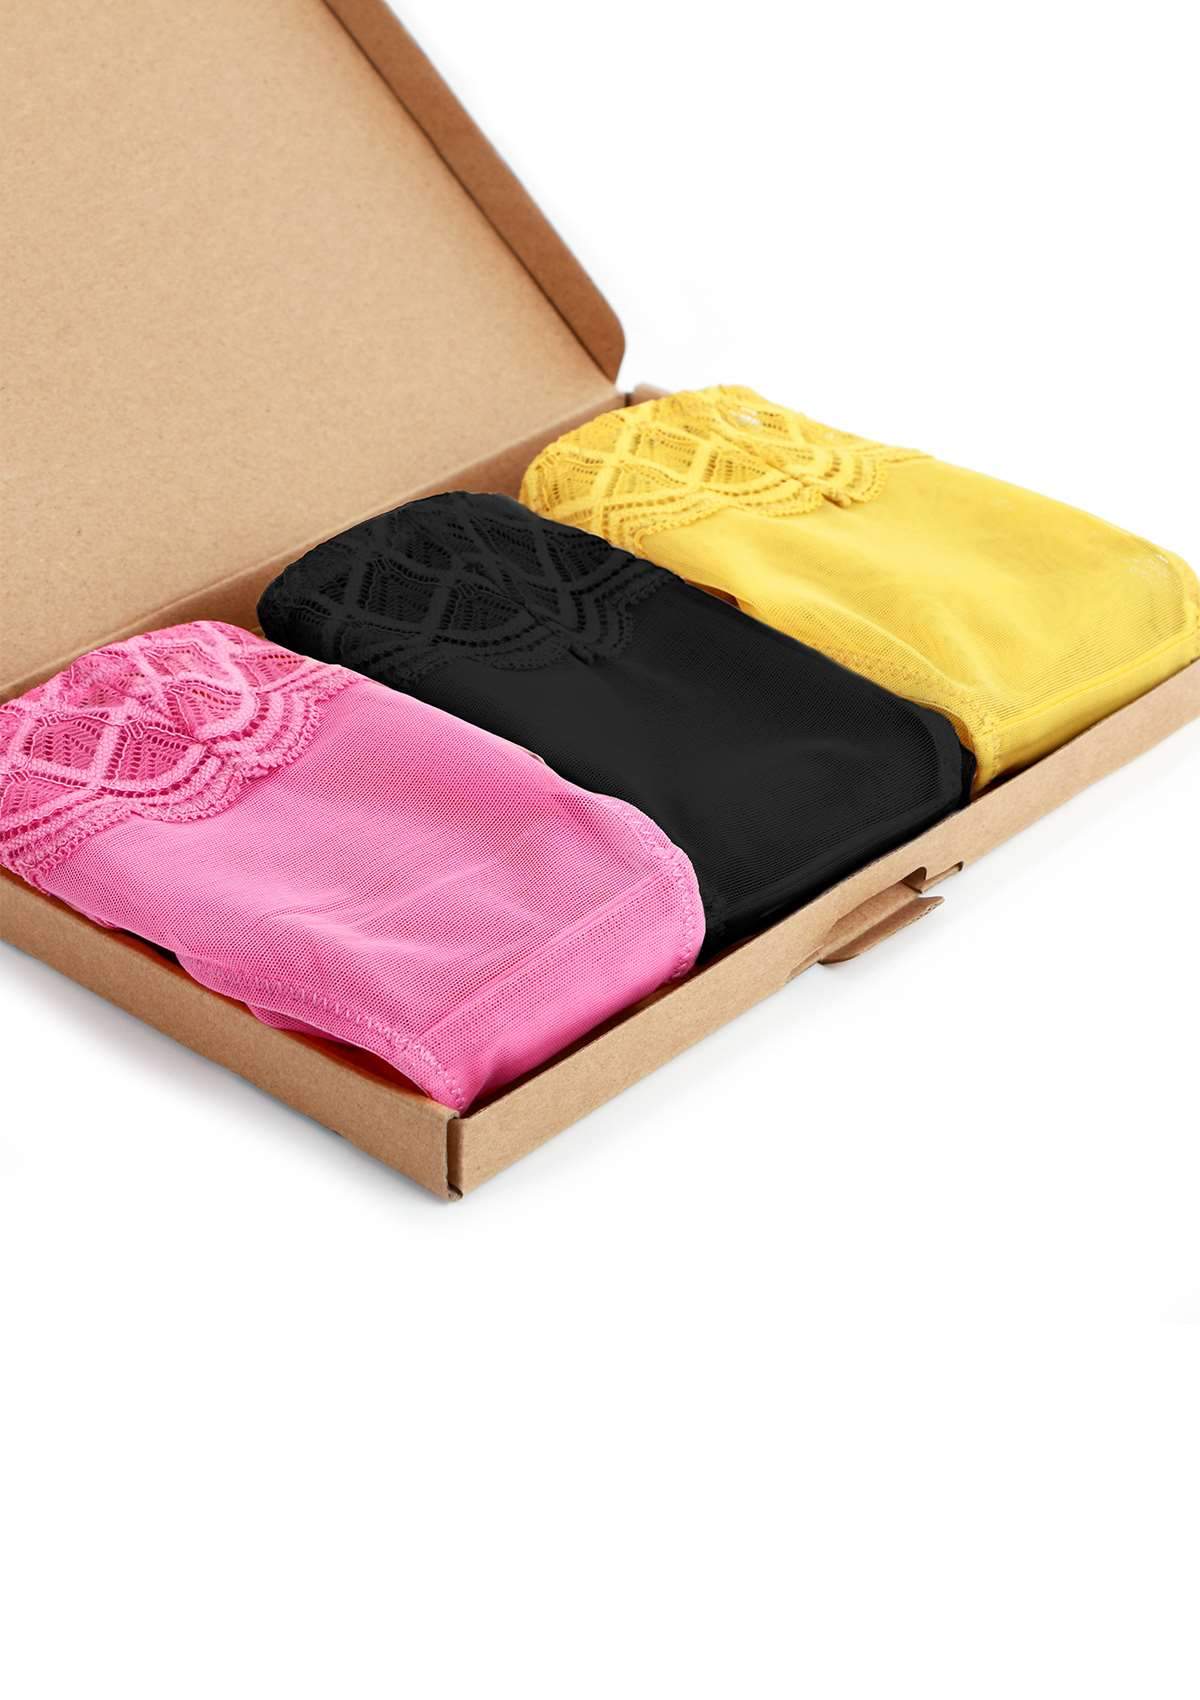 HSIA Plaid Lace Bikini Panties 3 Pack - S / Black+Yellow+Pink